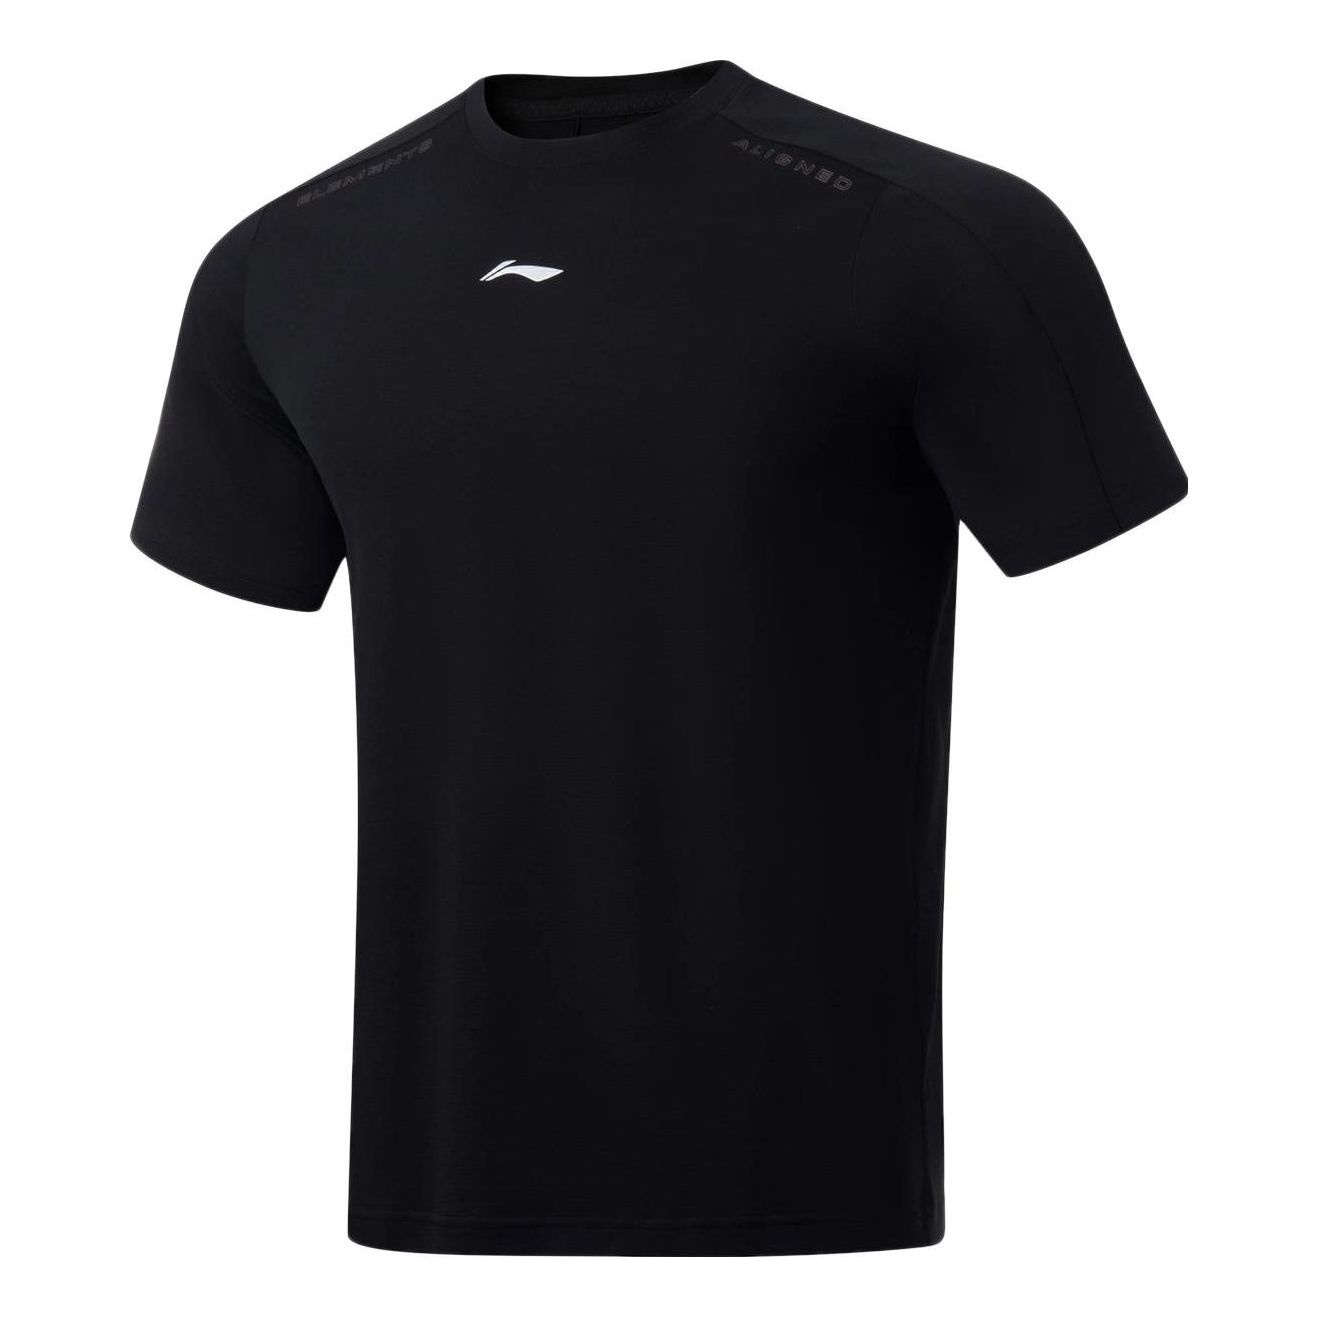 Li-Ning Small Logo Training T-shirt 'Black' ATST035-4 - 1